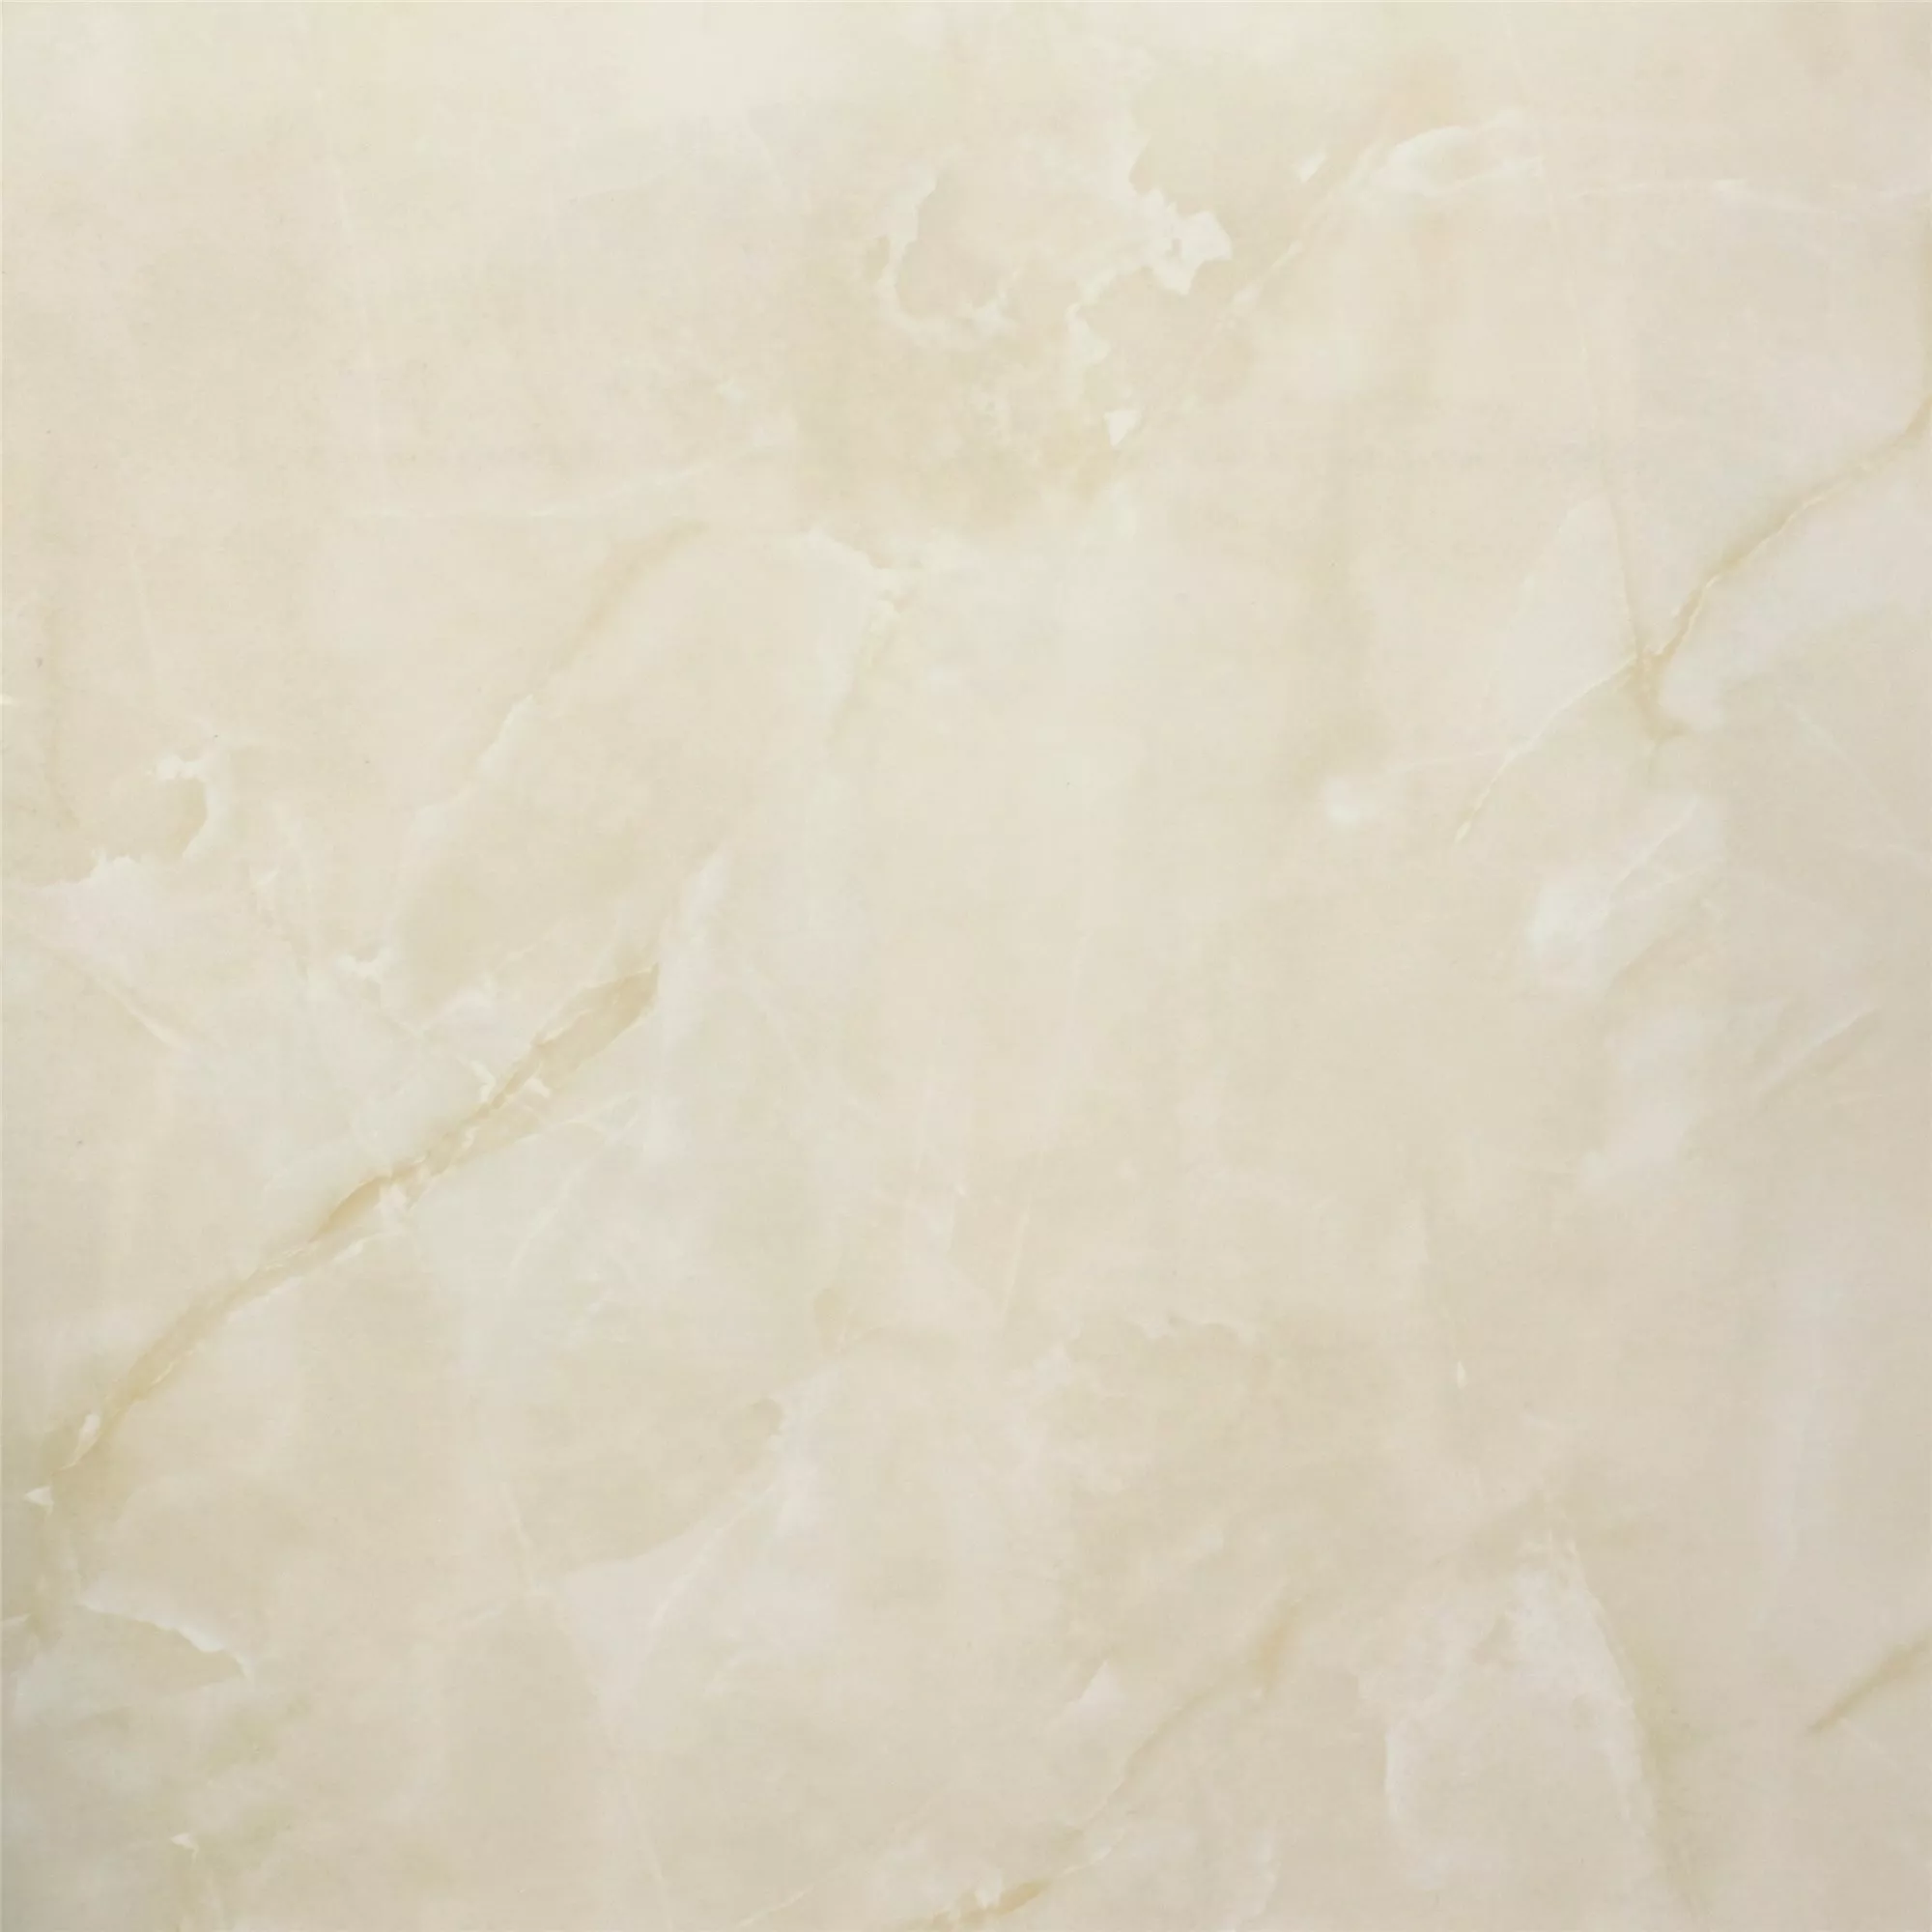 Πλακάκι Δαπέδου Jupiter Μαρμάρινη Όψη Eλεφαντόδοντο Αμεμπτος 80x80cm